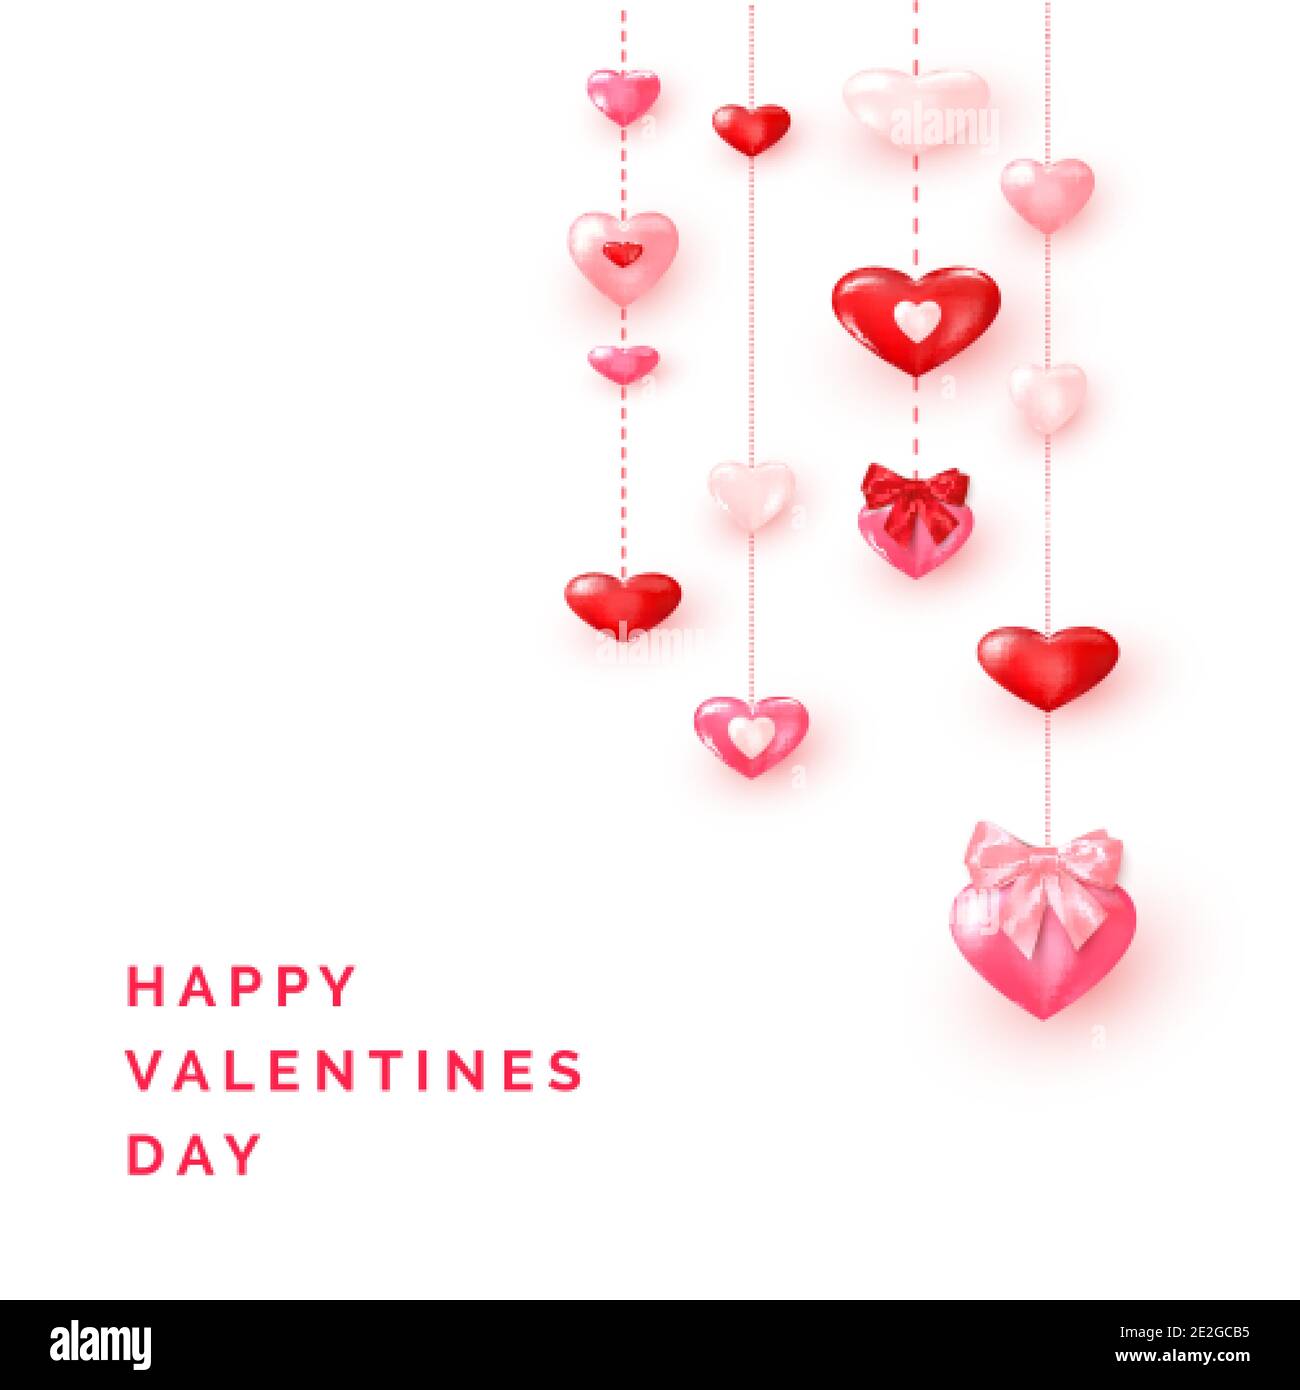 Valentinstag Grußkarte Vorlage`s. Valentinskarte verzierte glänzende rote und rosa Herzen. Vektor Stock Vektor